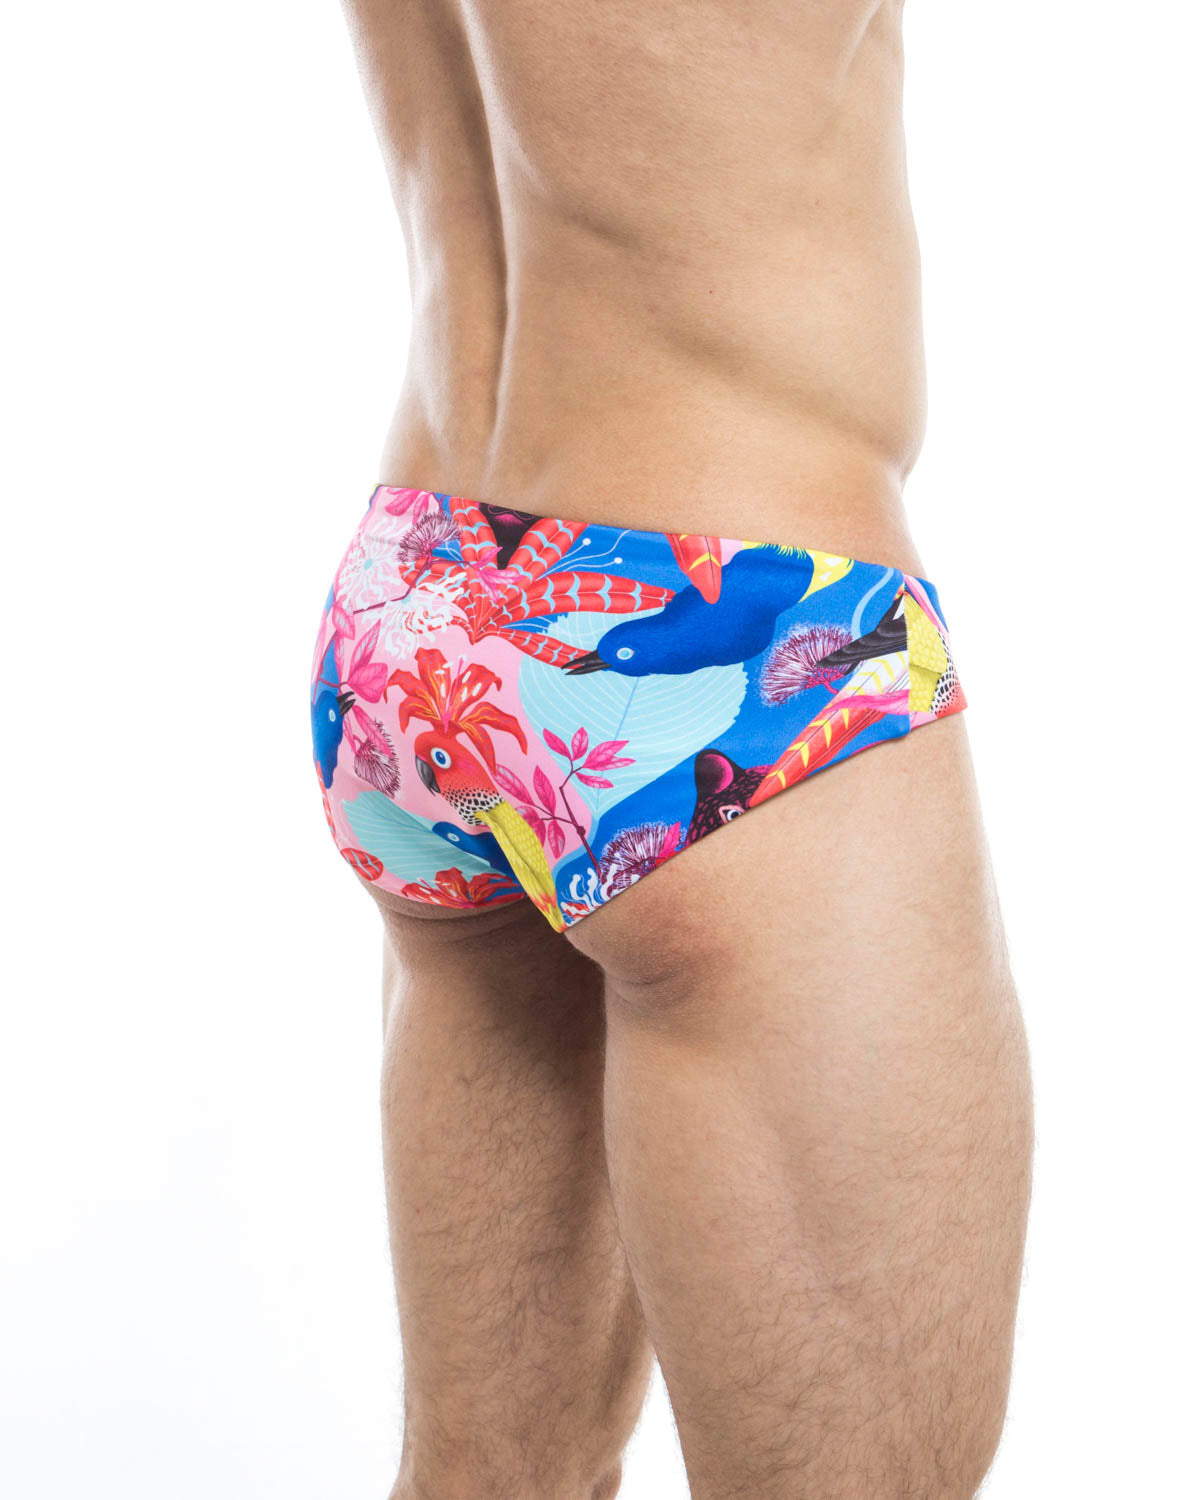 Men's swim briefs - HUNK2 Underwear Panthere Reversible Swim Briefs available at MensUnderwear.io - Image 1